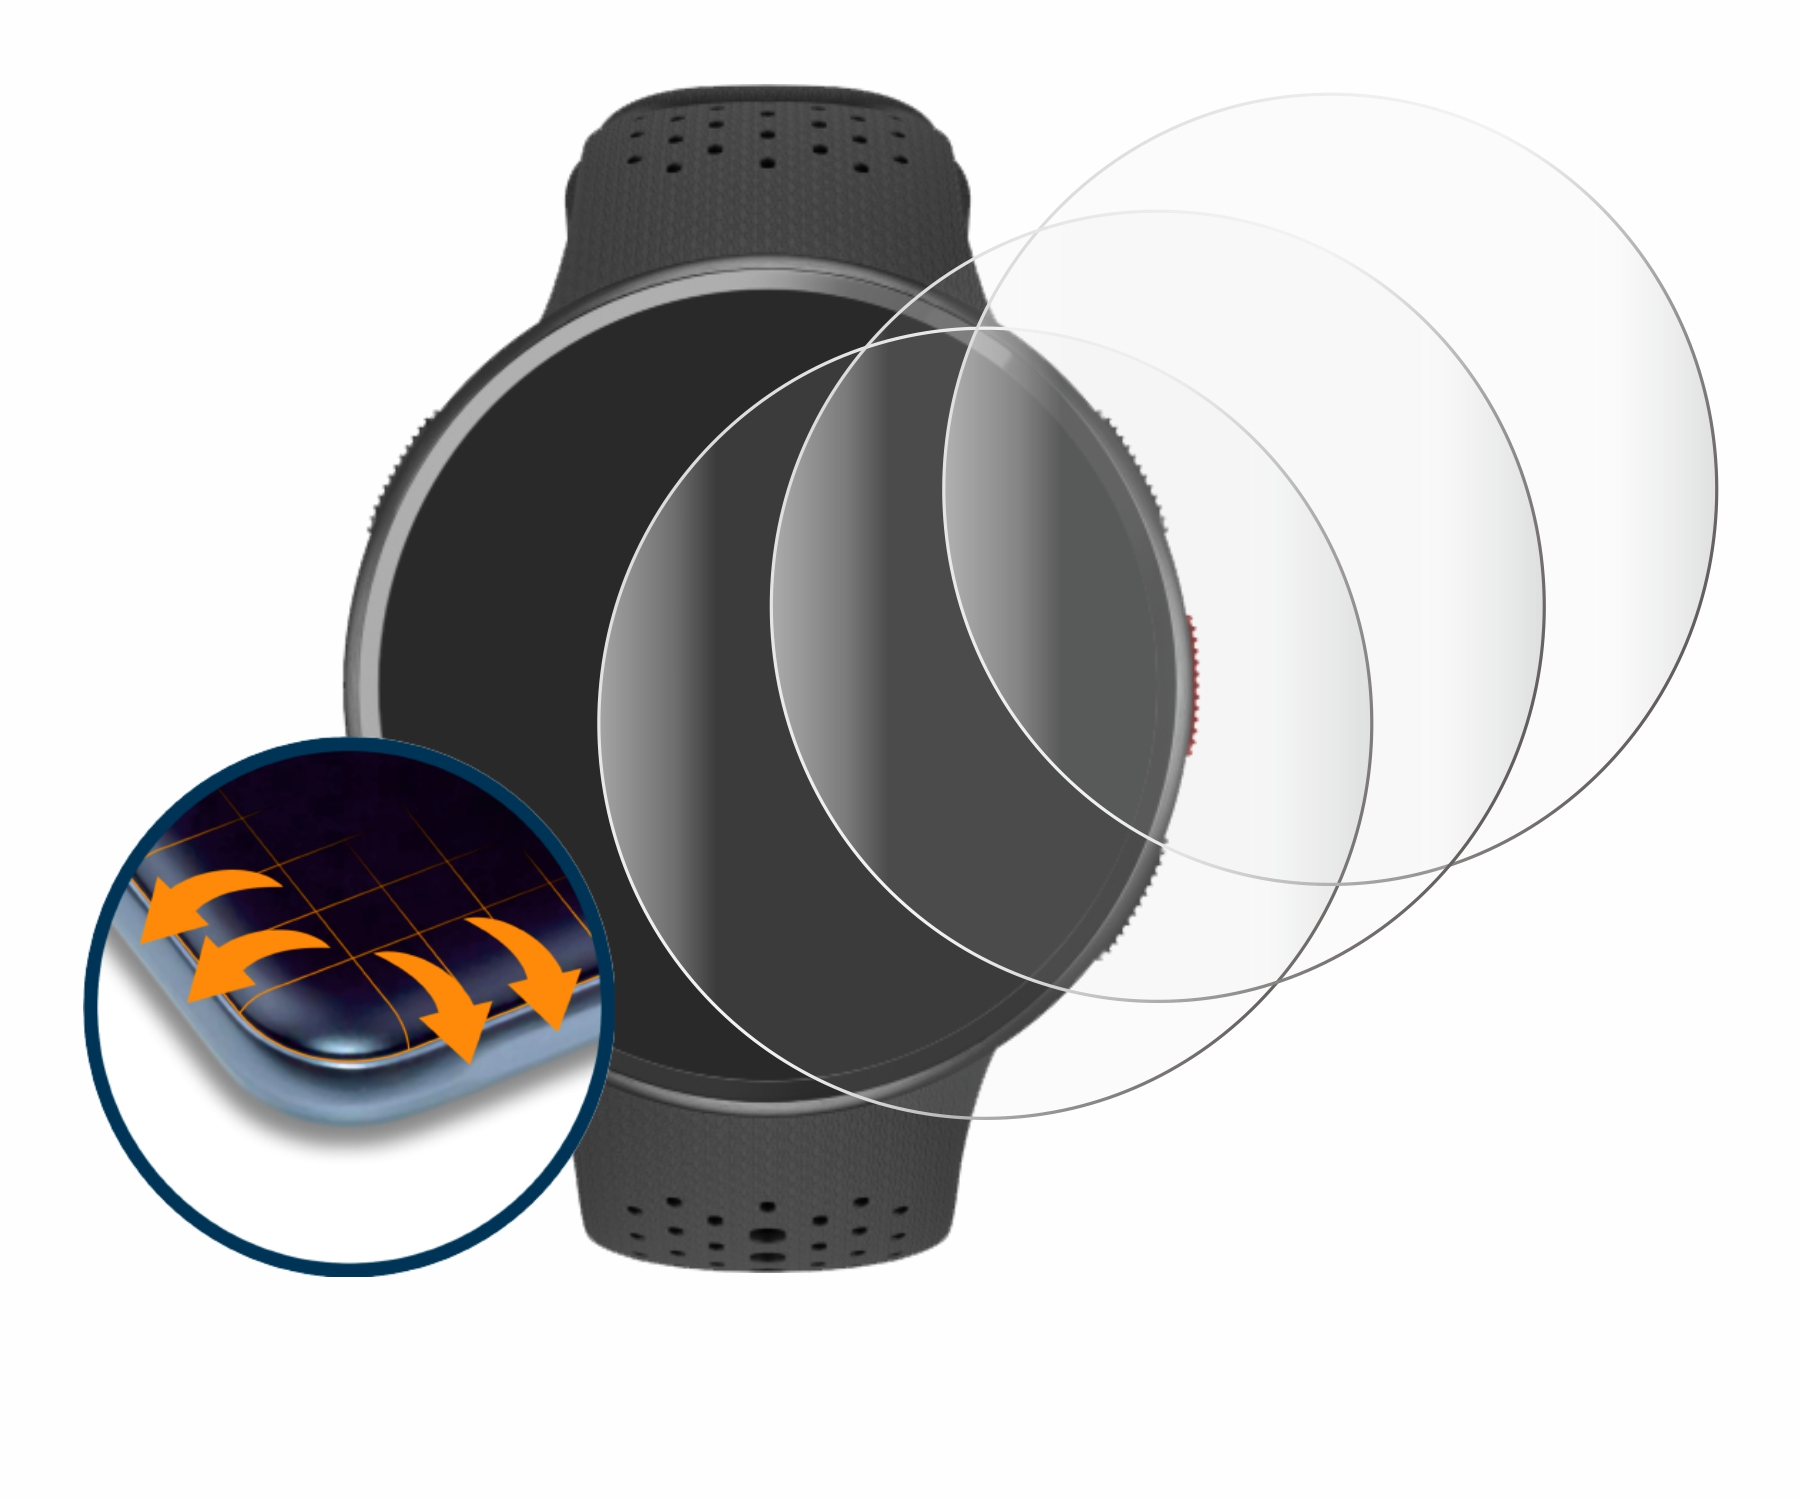 SAVVIES 3D Flex Full-Cover Polar Schutzfolie(für 4x Pacer Pro) Curved